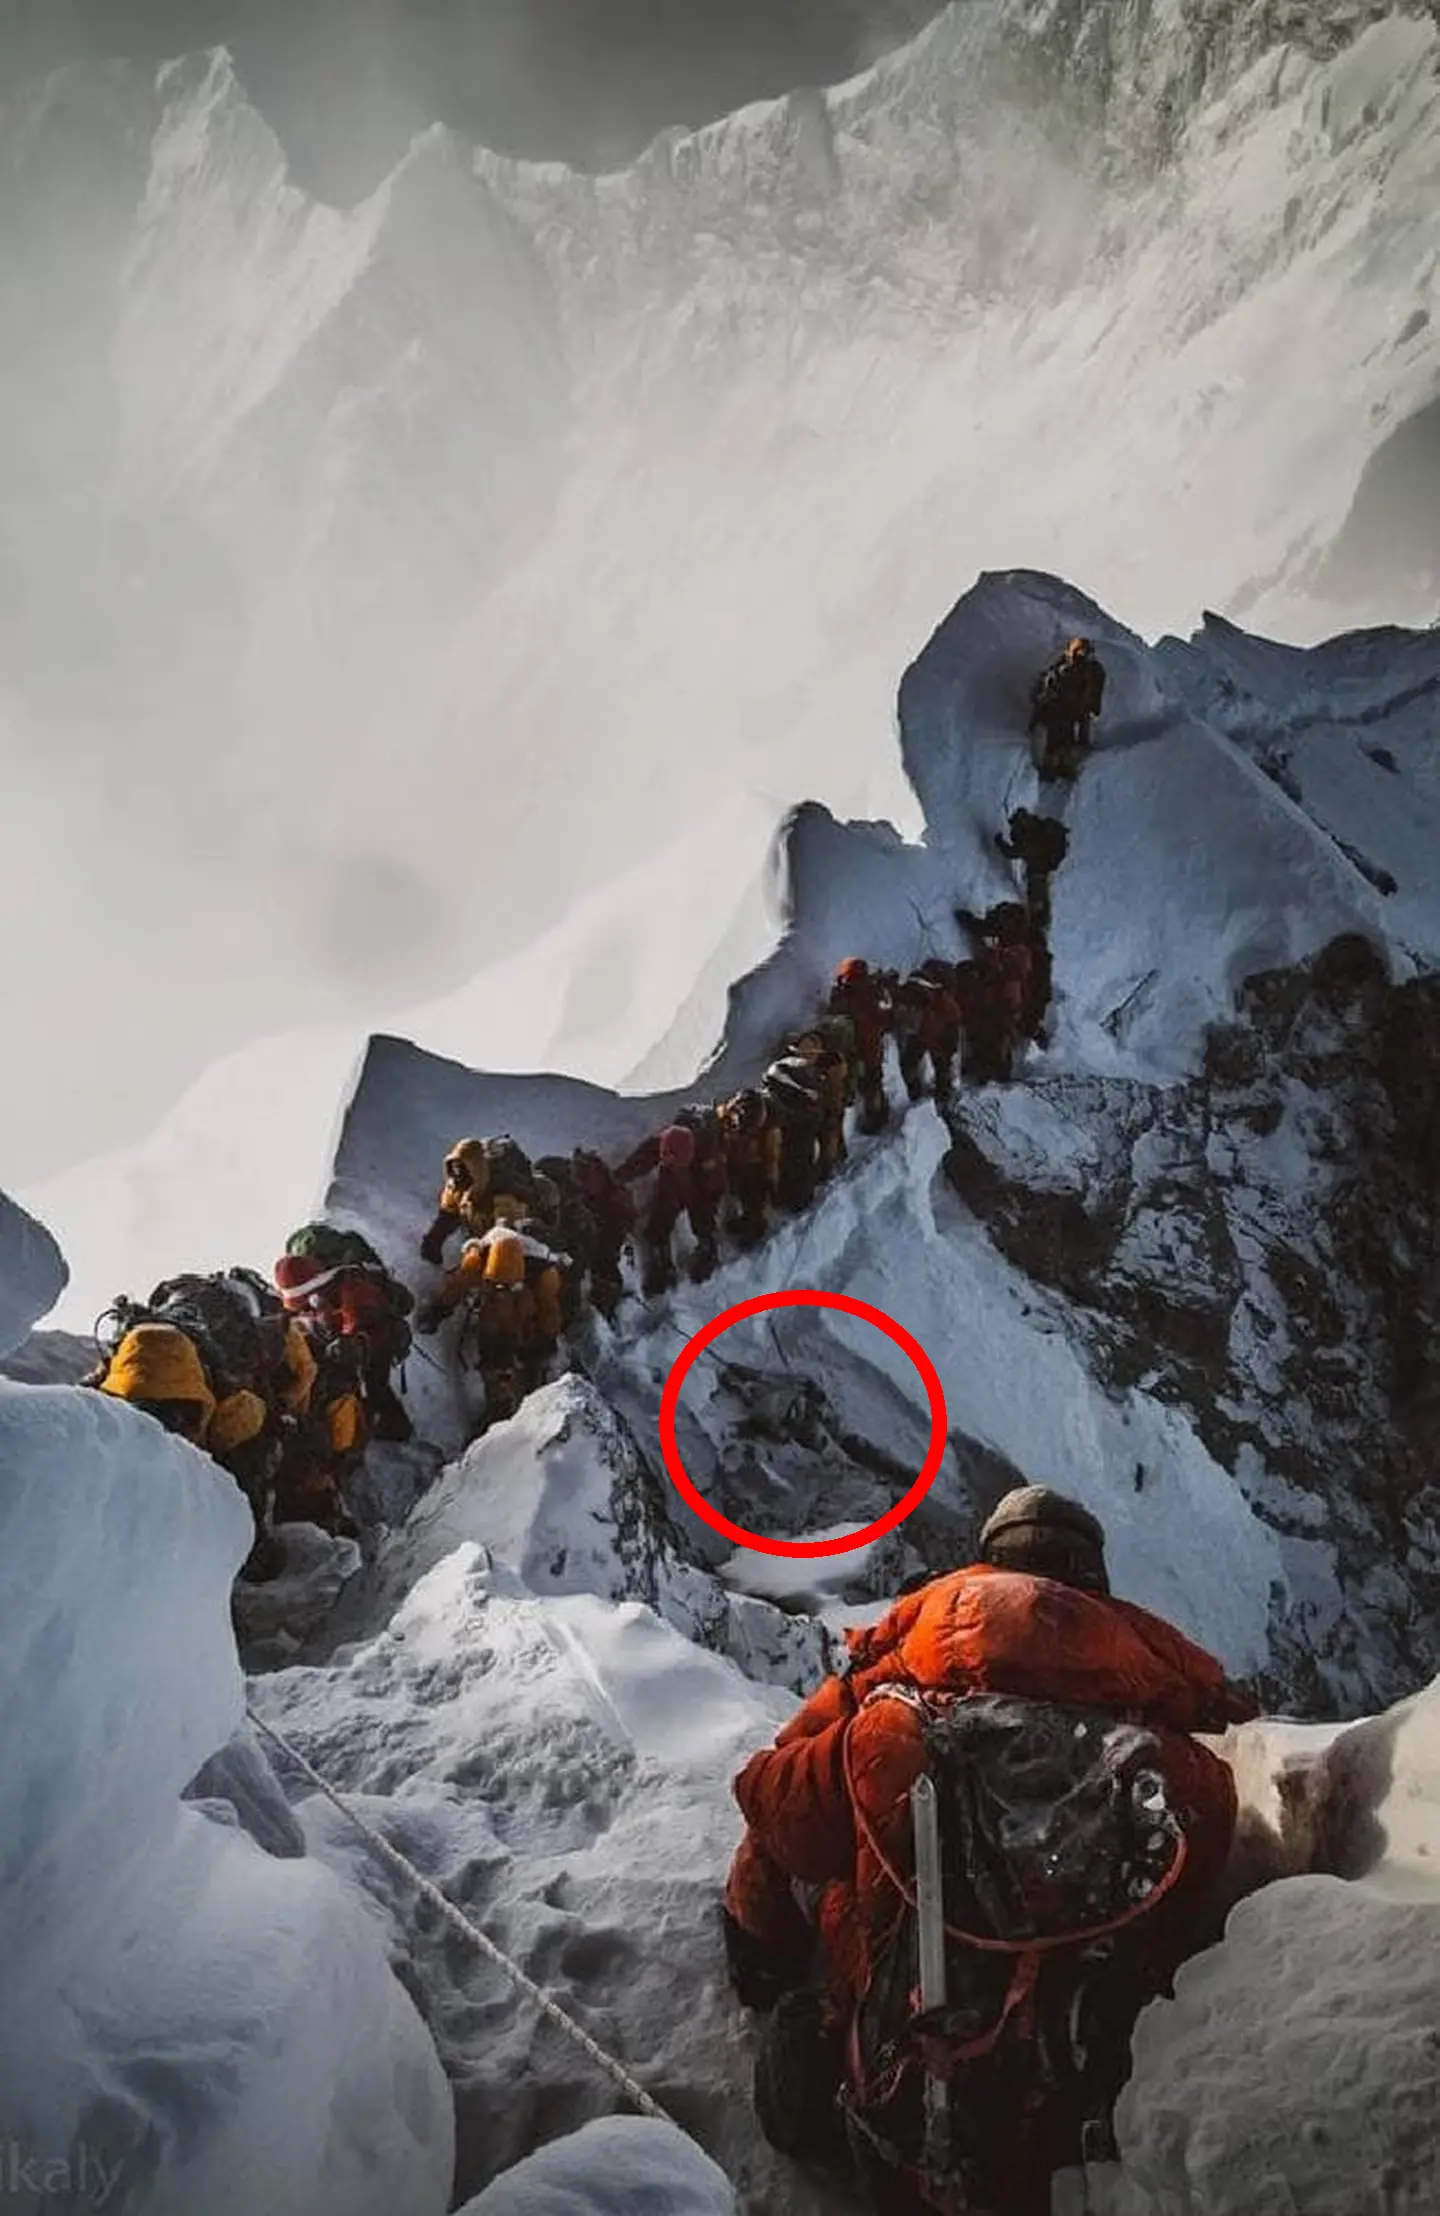 Сотні альпіністів щороку проходять повз тіла загиблих, прямуючи до вершини Евересту. Фото Elia Saikaly